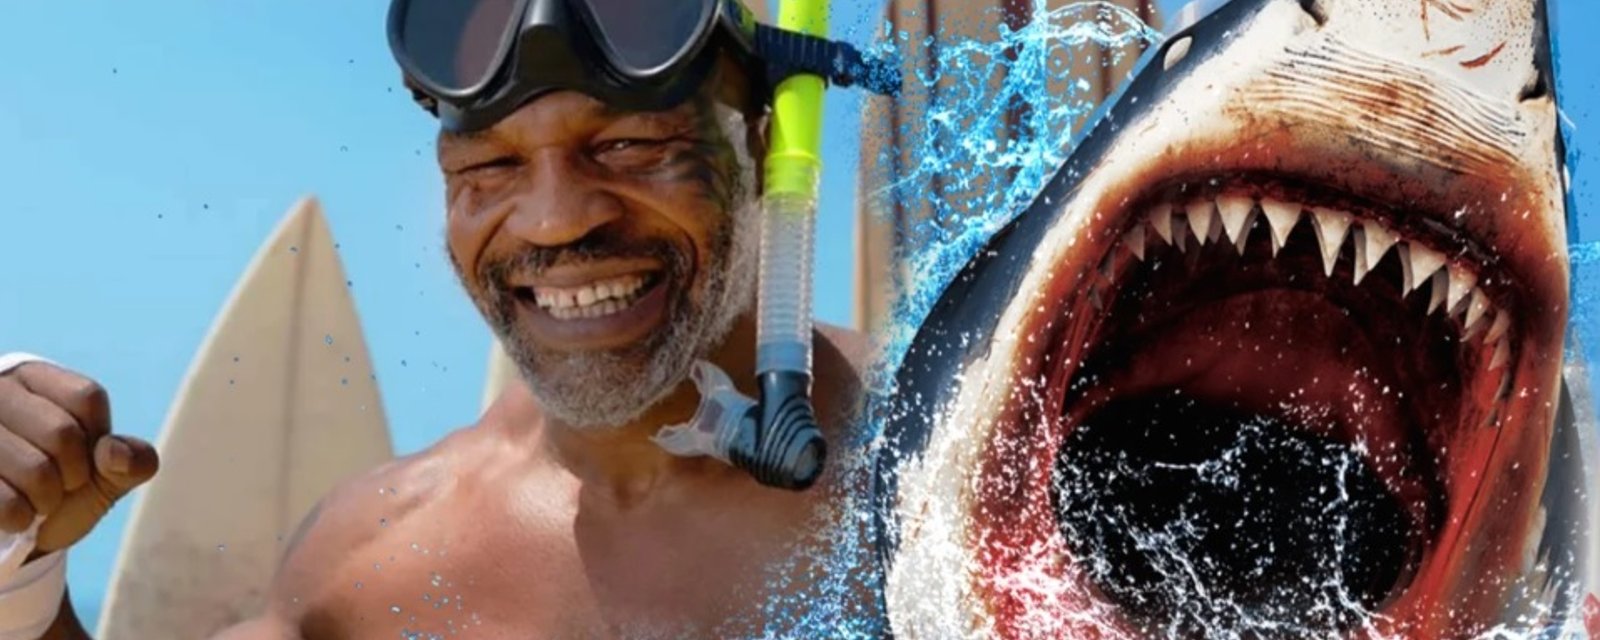 Mike Tyson se battra contre... Un requin!